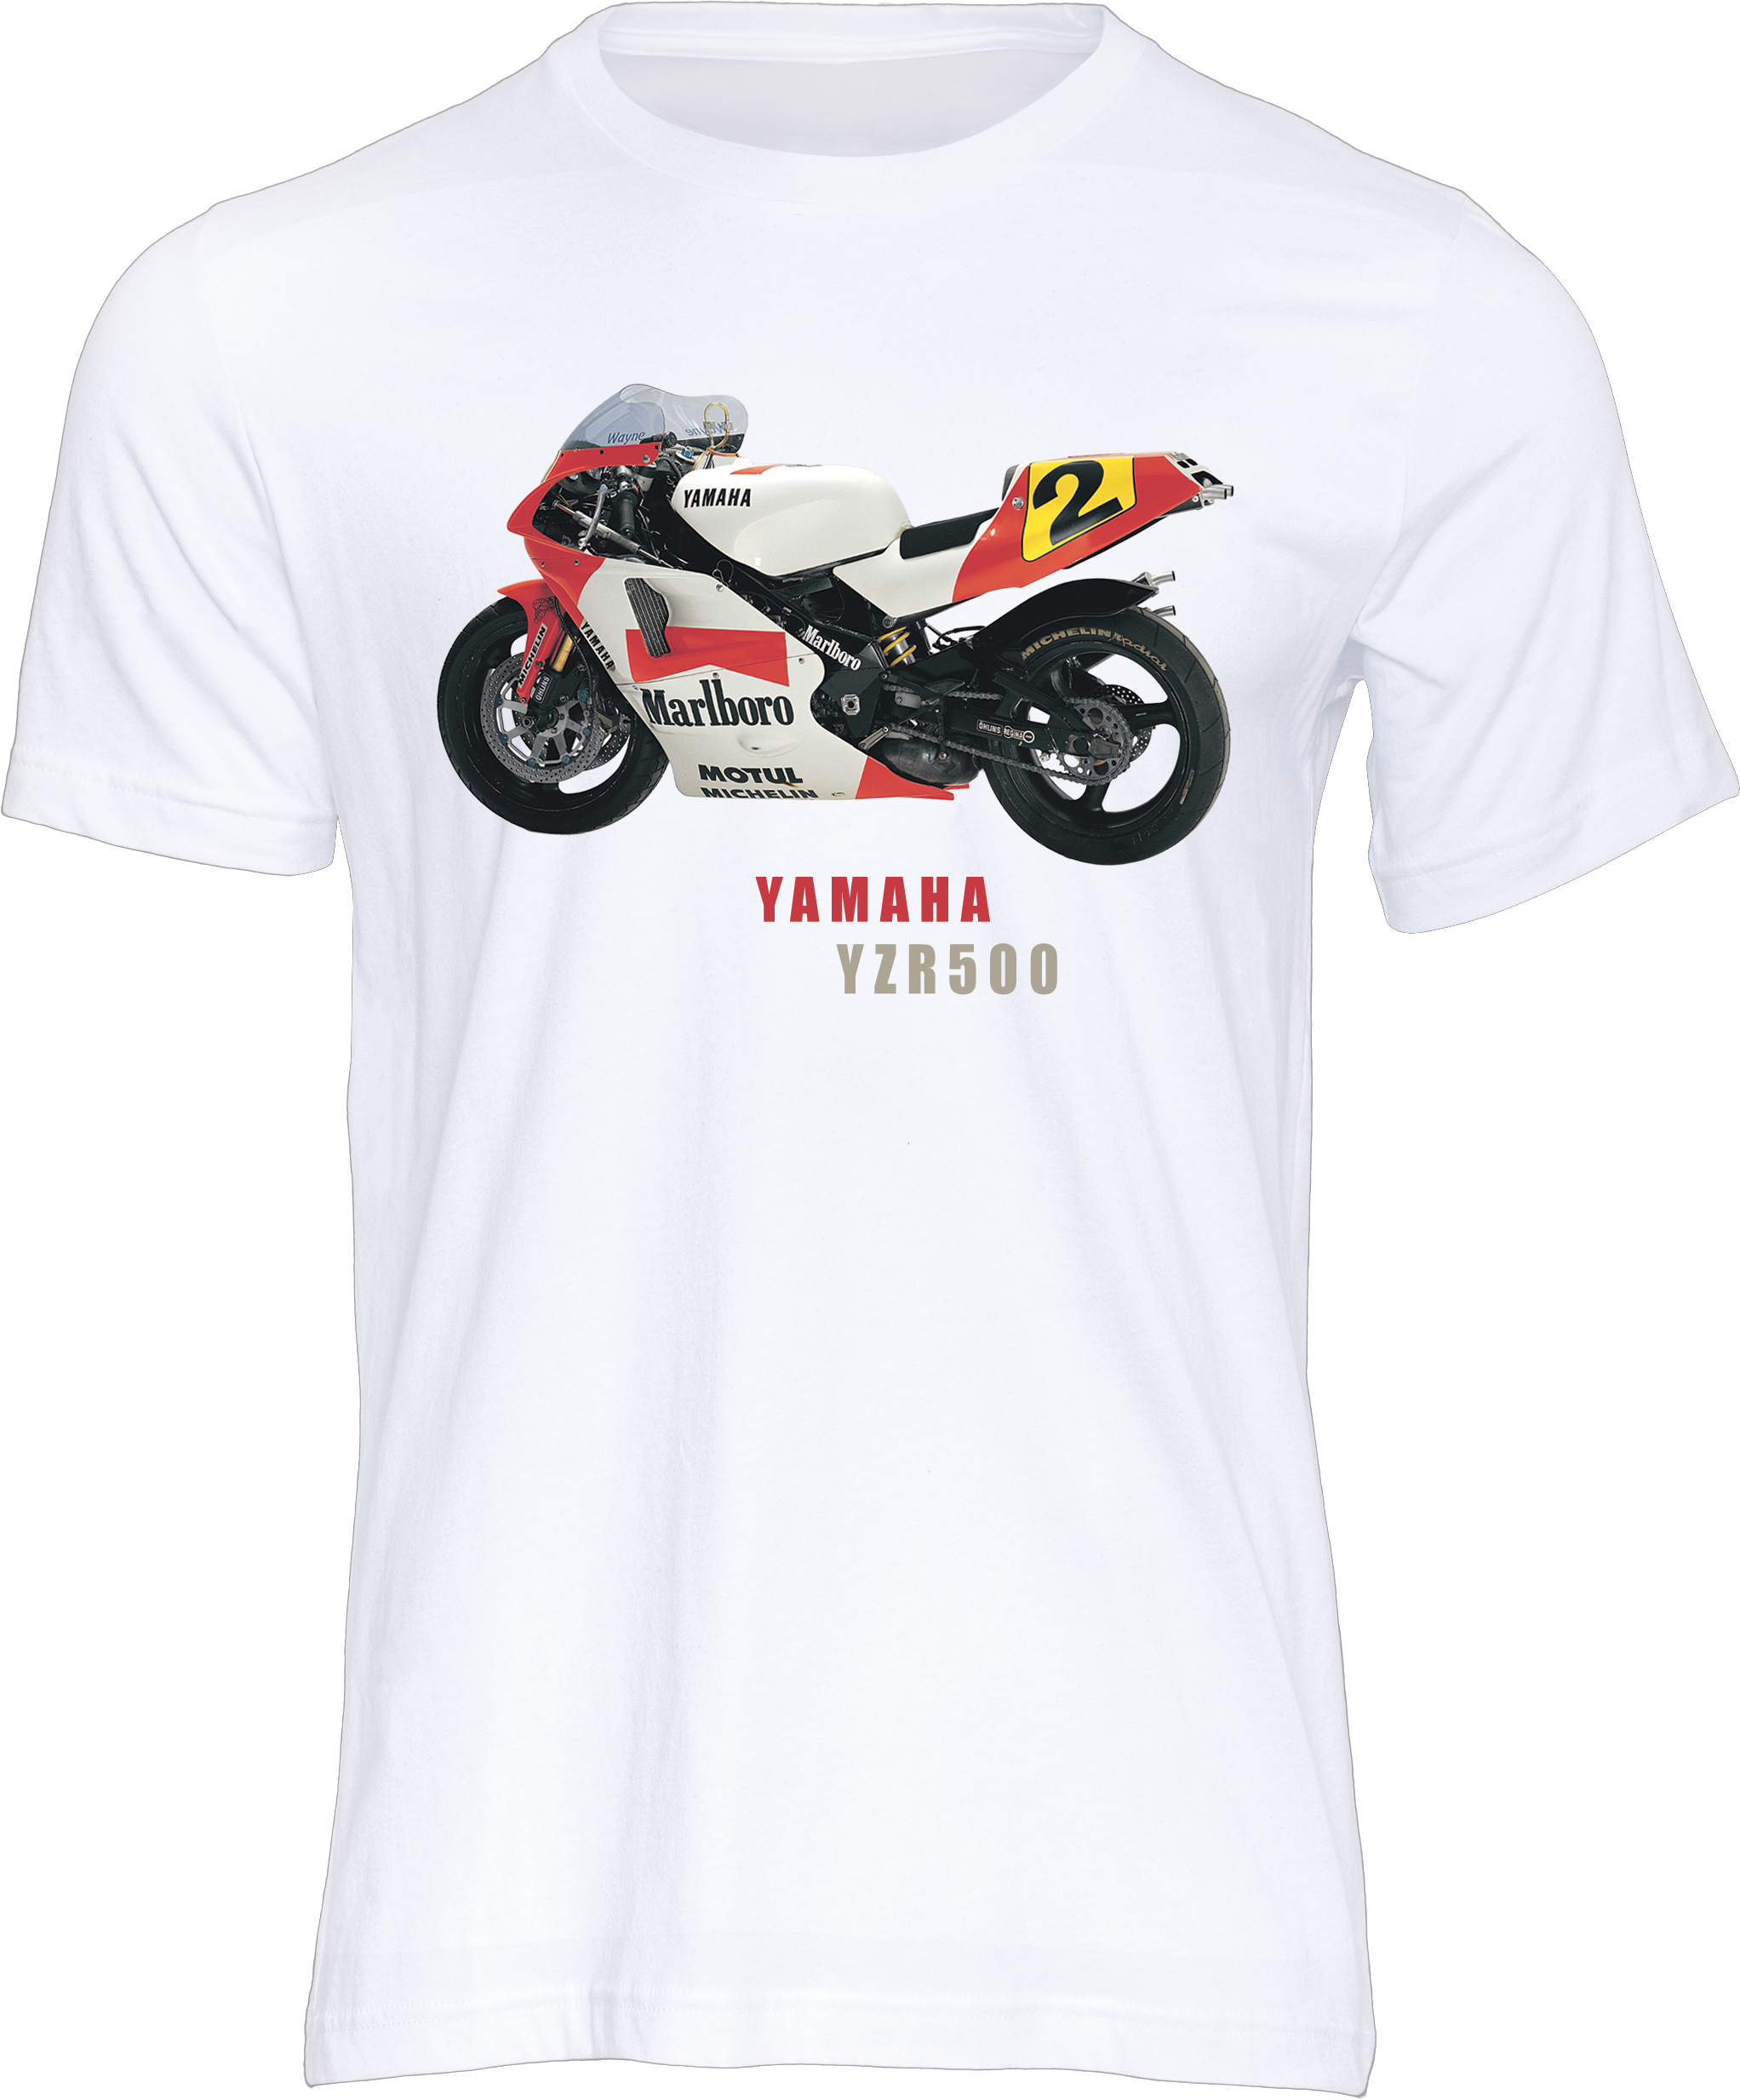 Yamaha YZR500 T-shirt White